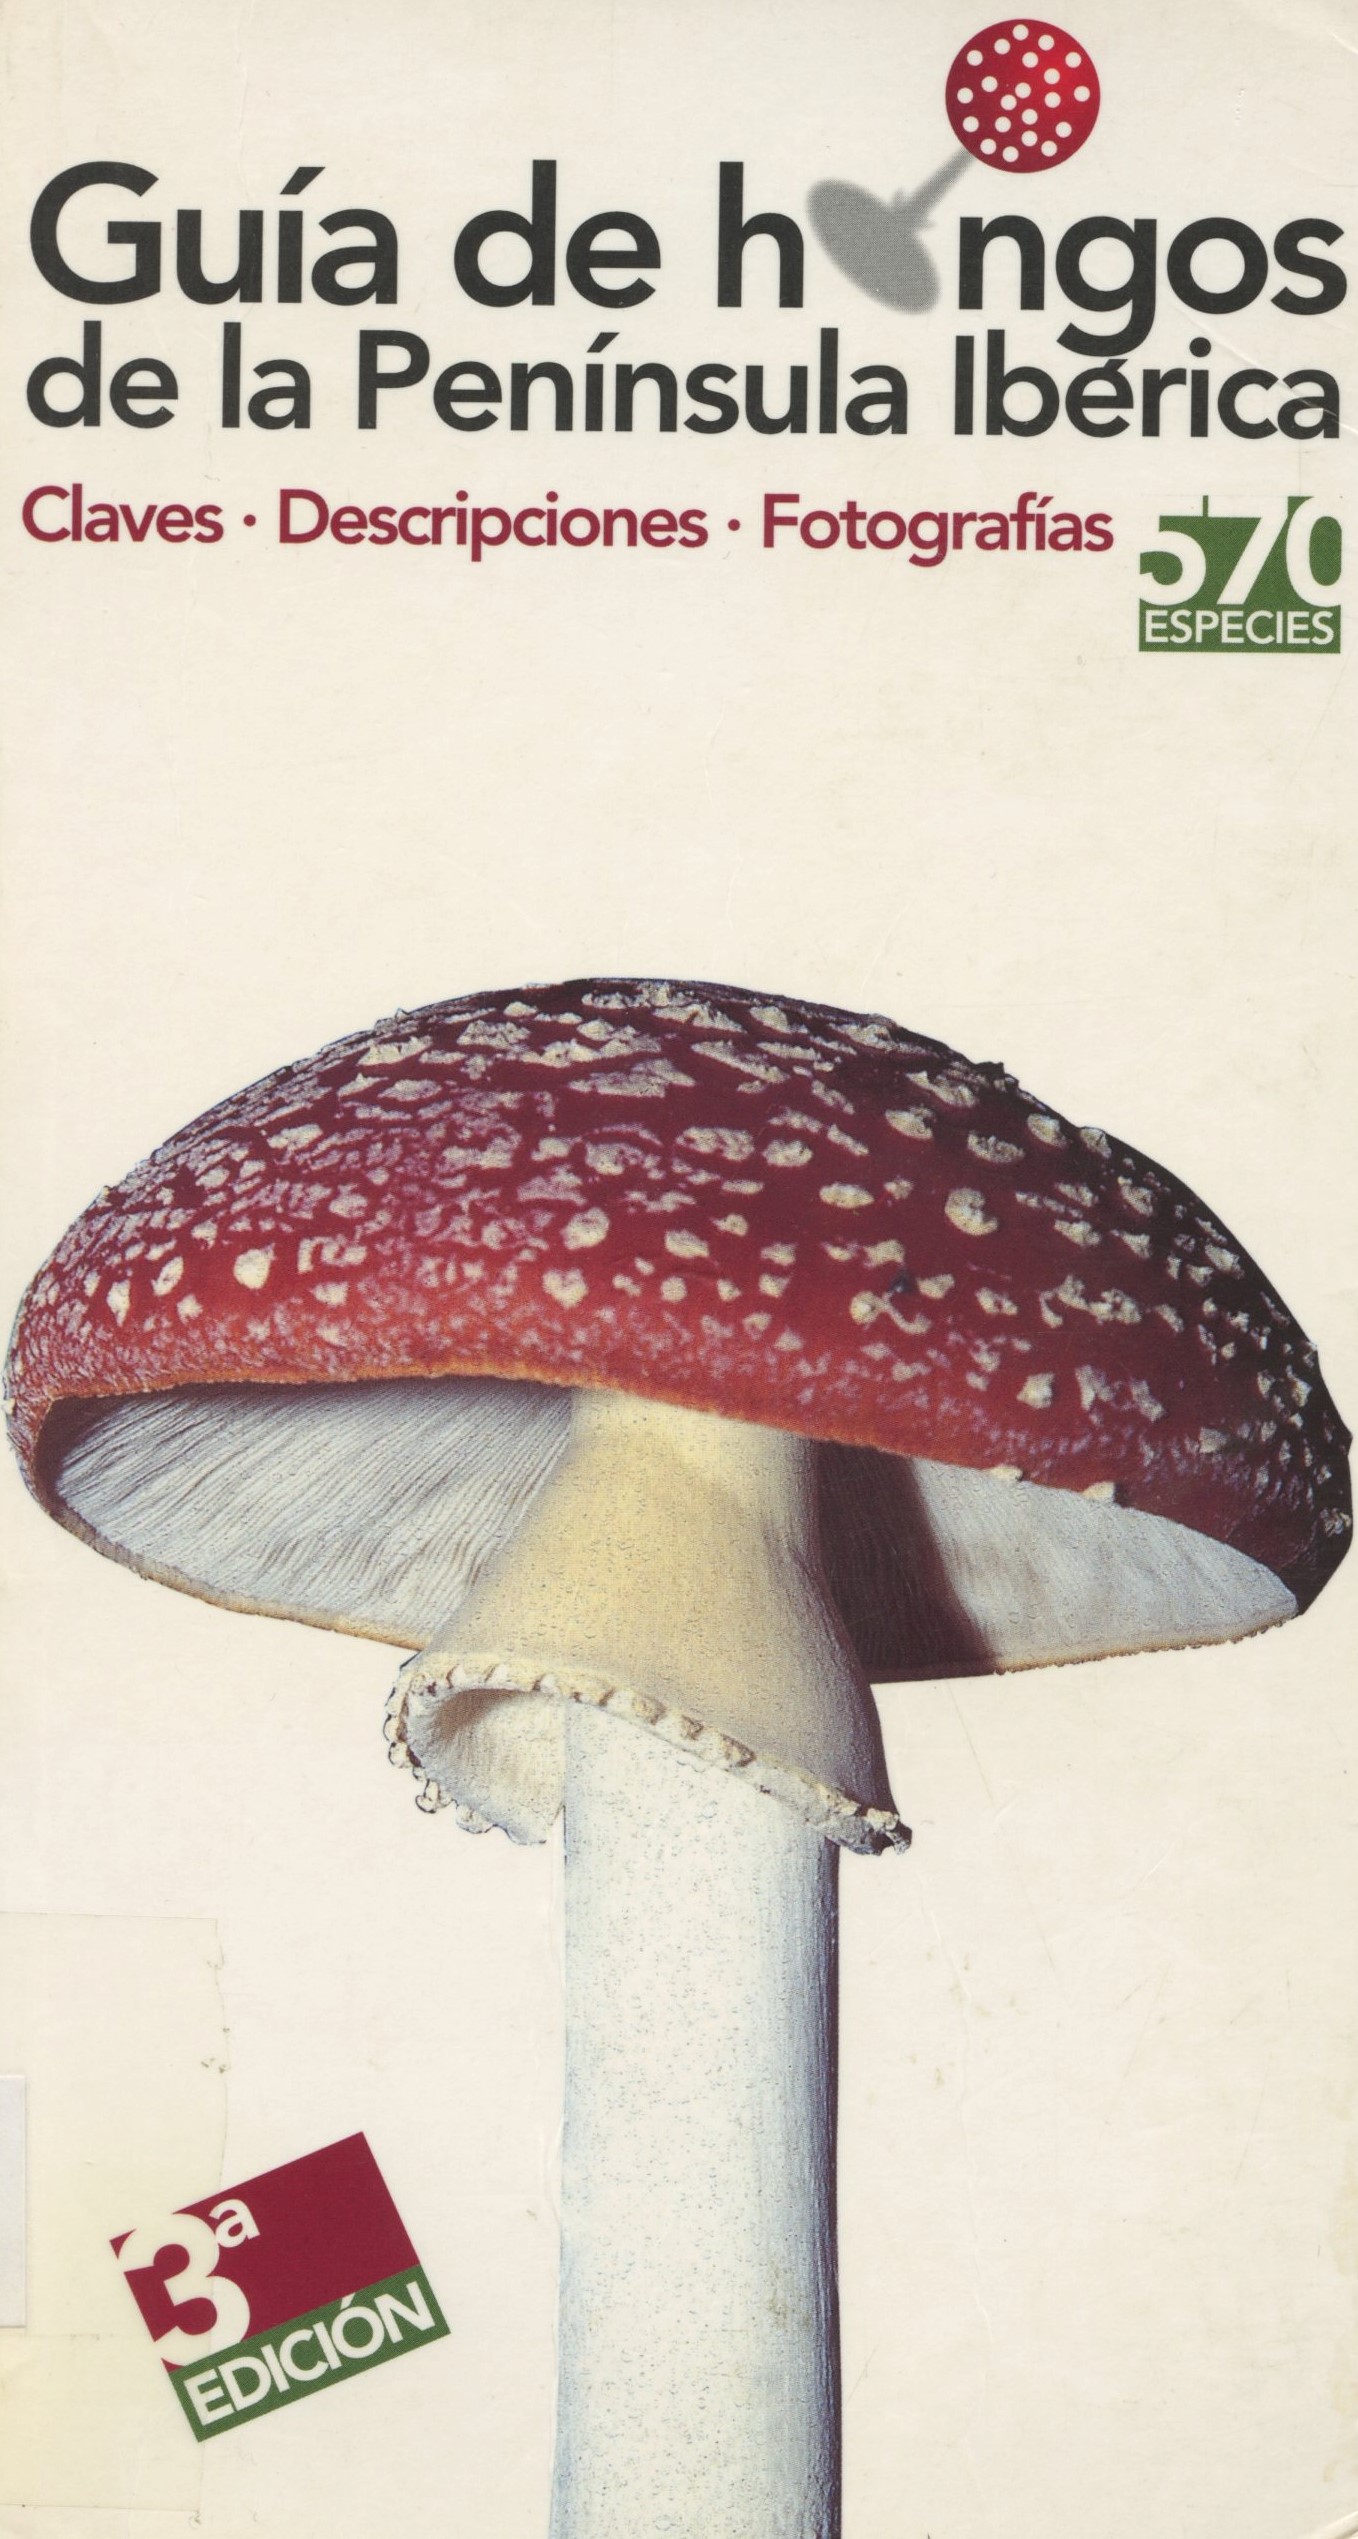 Imagen de portada del libro Guía de hongos de la Península Ibérica